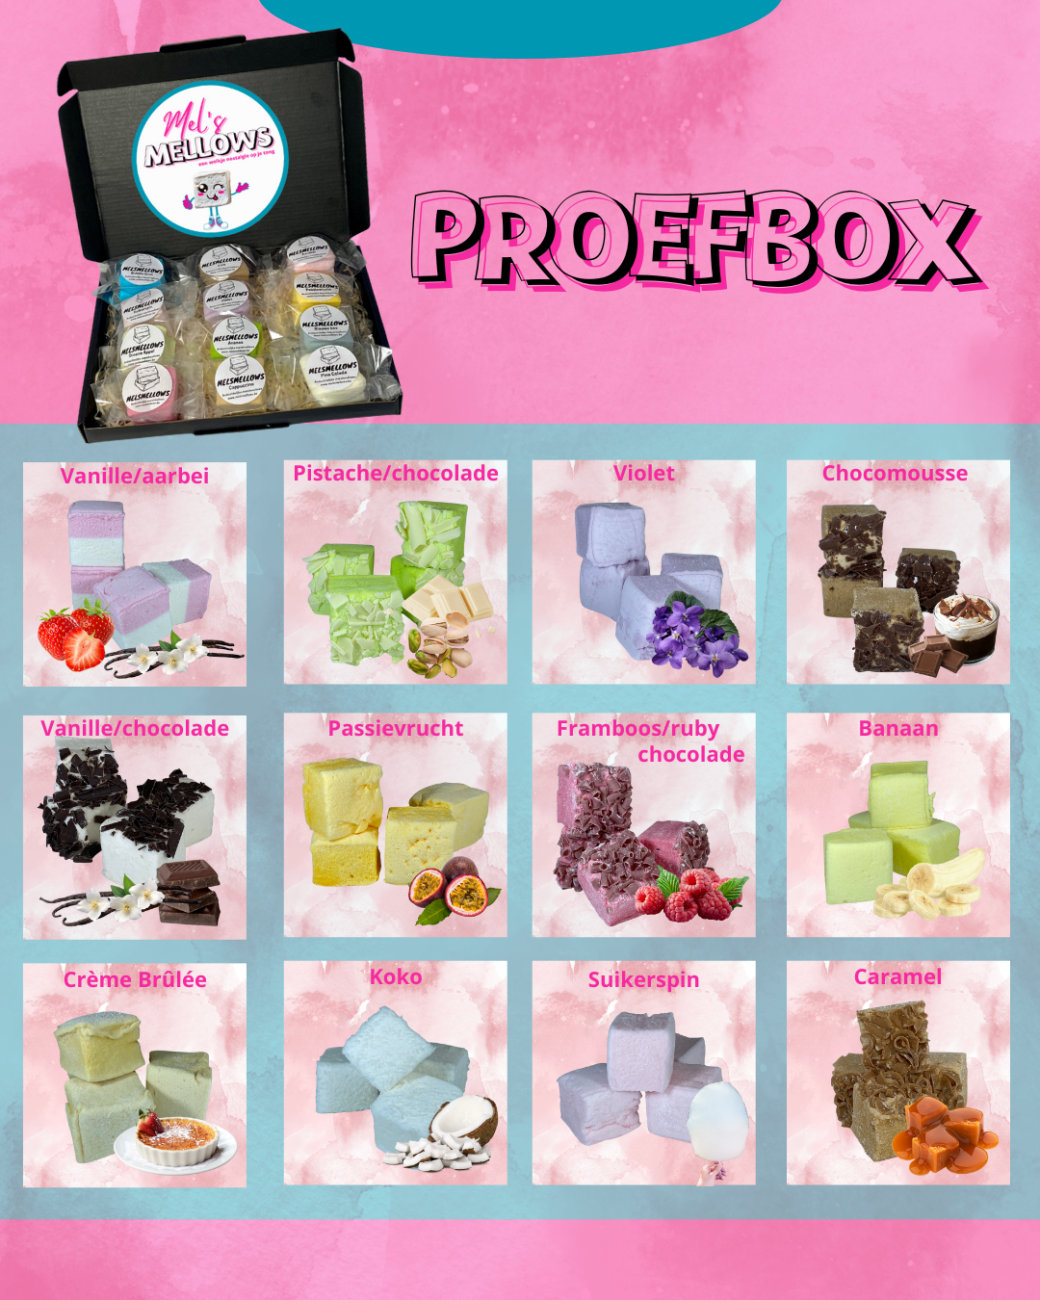 Mel's Mellows proefbox met 12 verschillende smaken